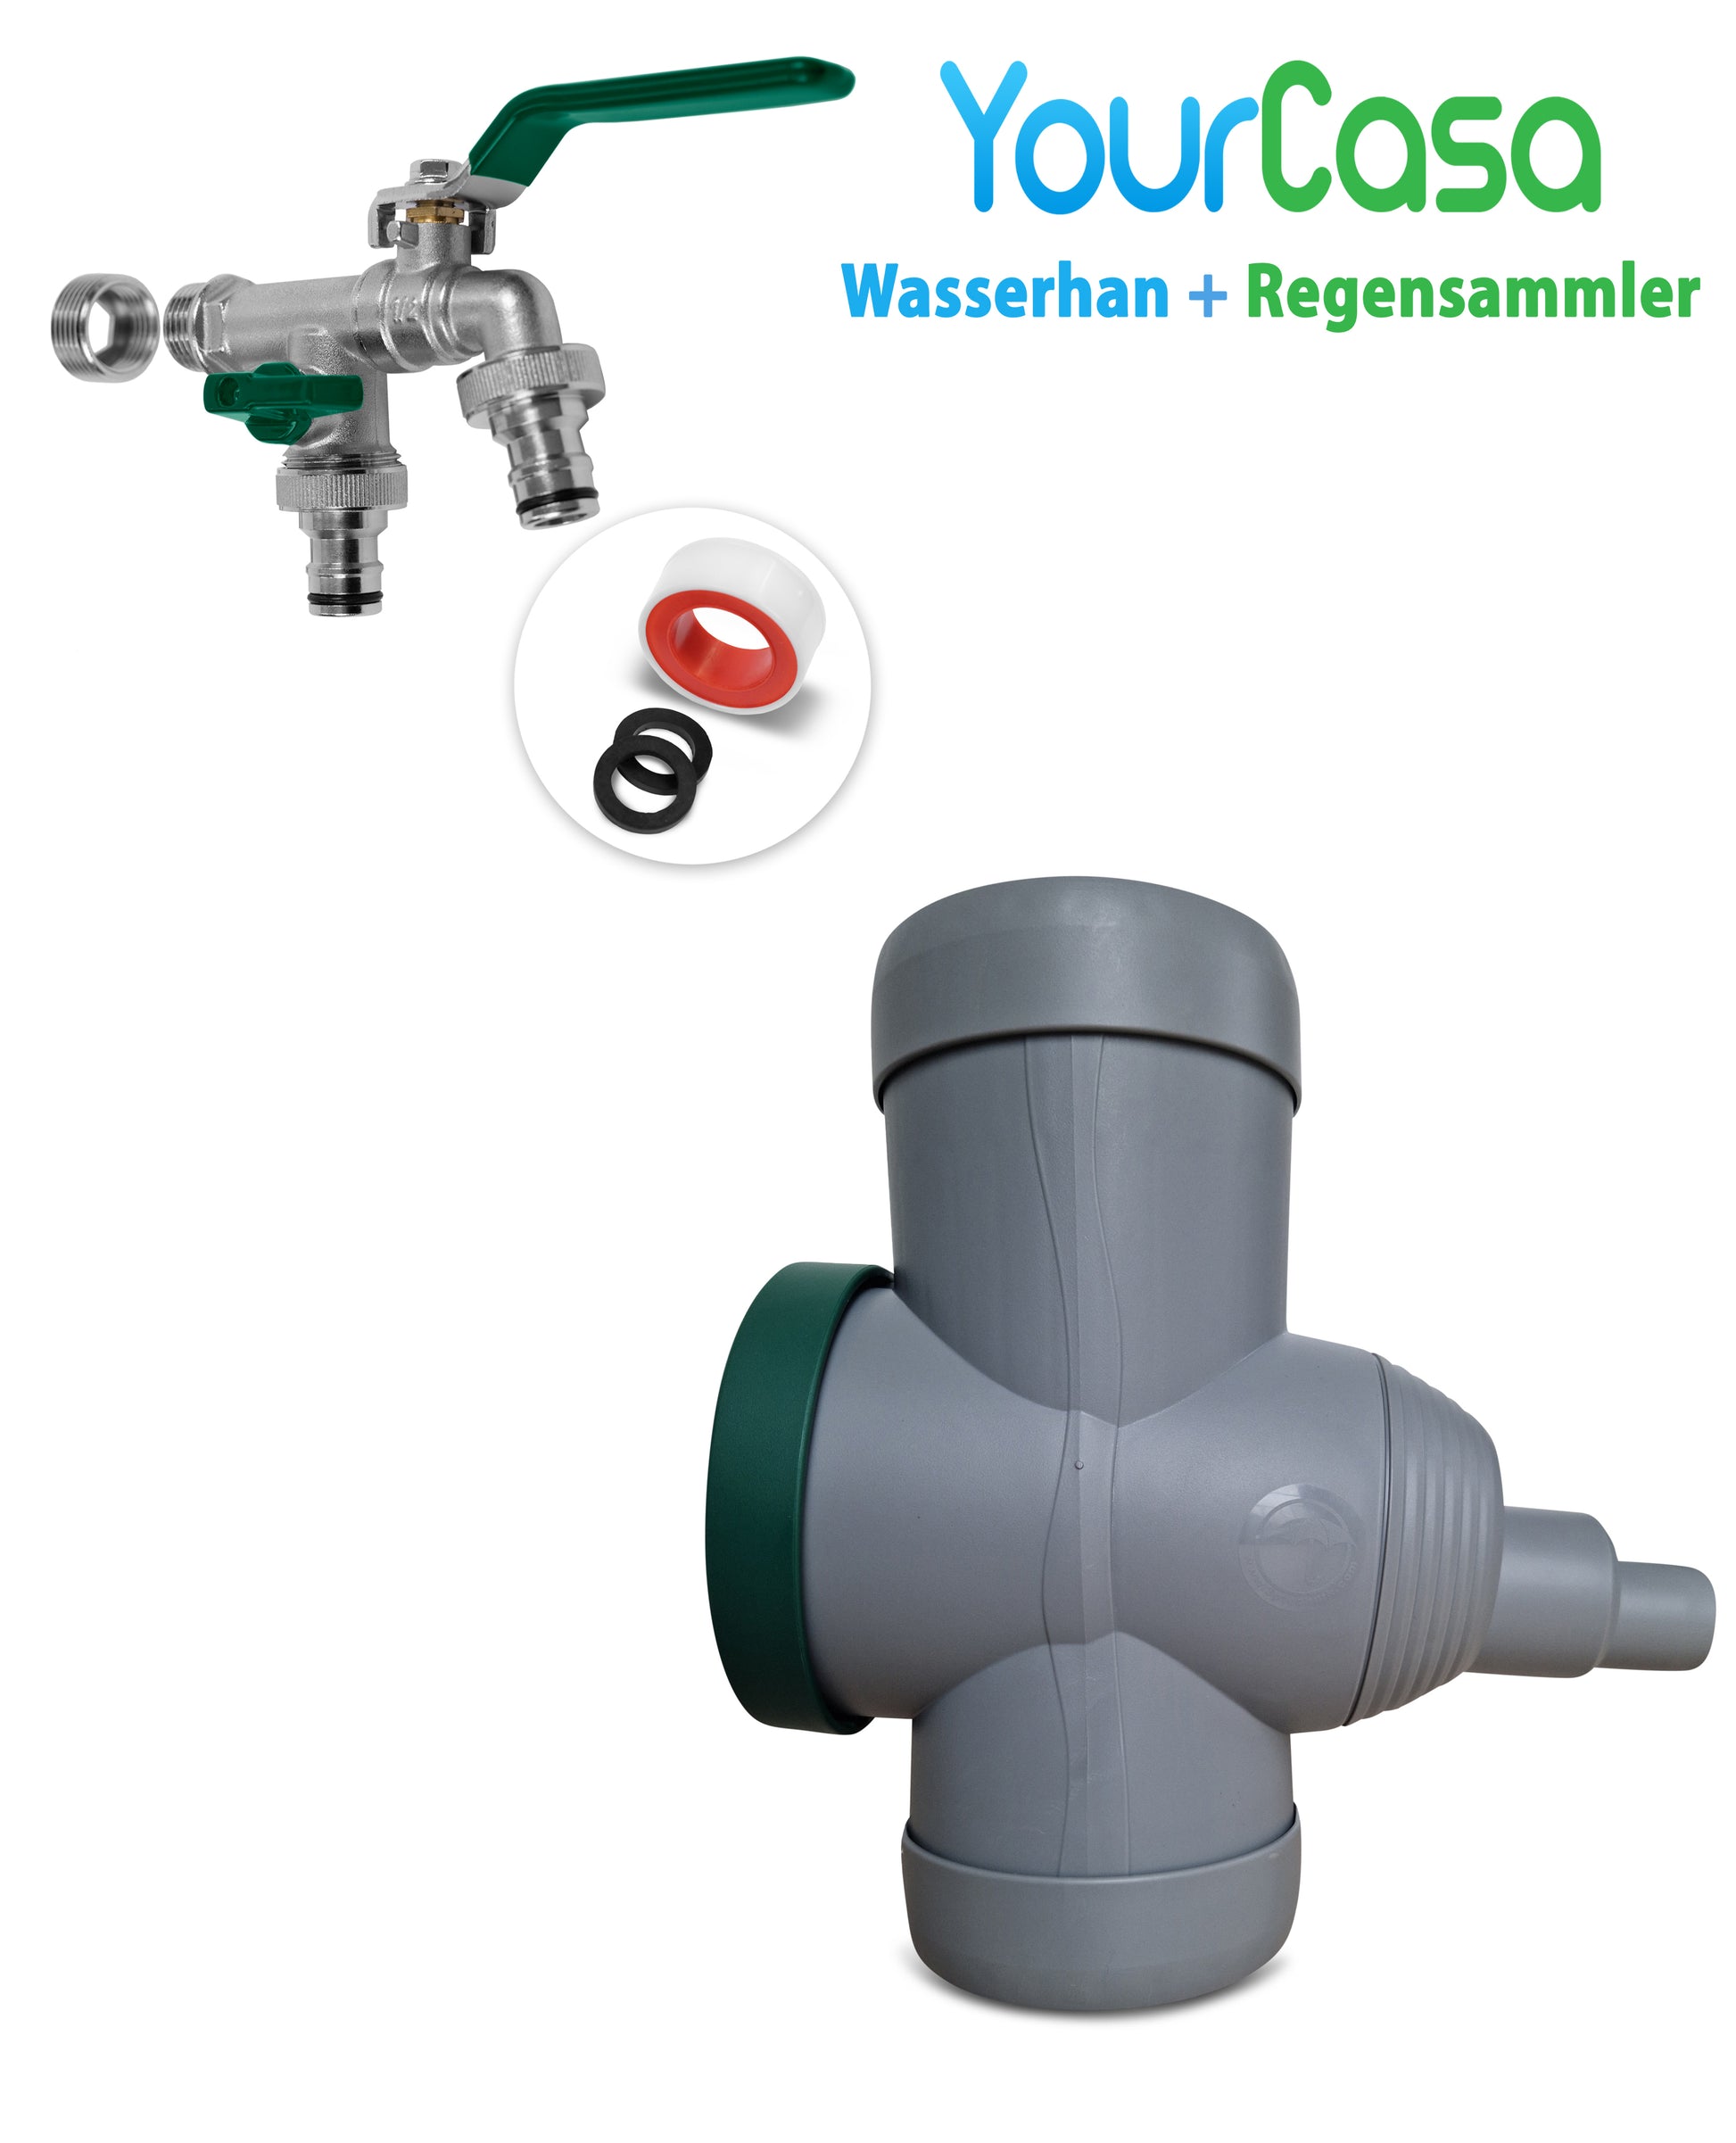 Regenwasserumlenker und Anschlussset für Hauswassersammelsystem mit Überlaufschutz: YourCasa® Regensammler [Downpipe70] + Wasserhahn Messing von yourcasa-de.